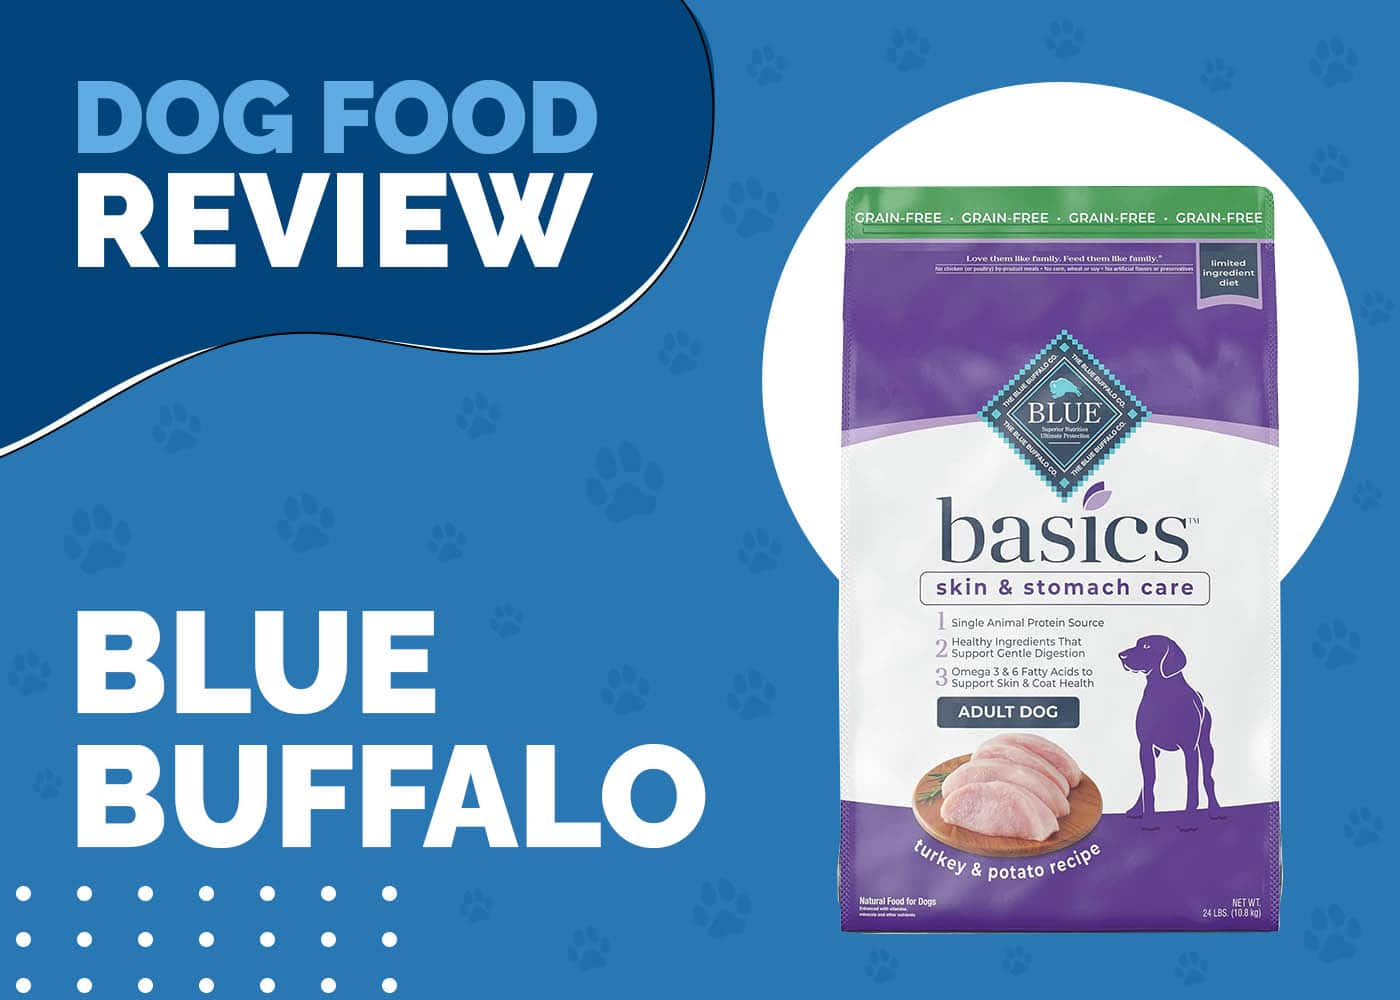 Blue Buffalo Basics Dog Food Review